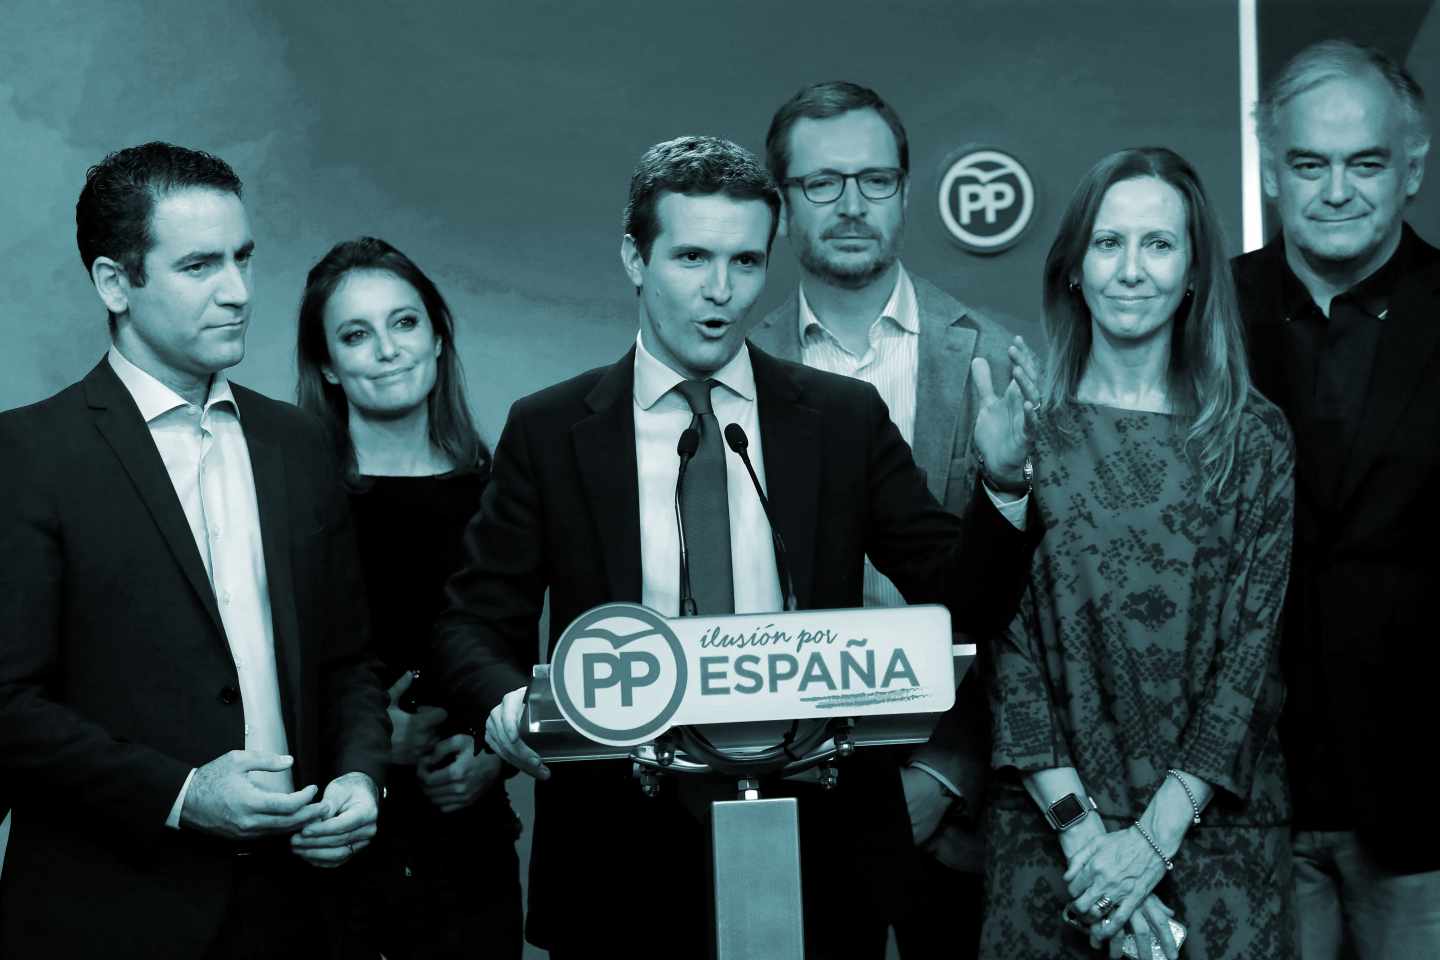 El terremoto andaluz alza a Vox en toda España y salva a Casado